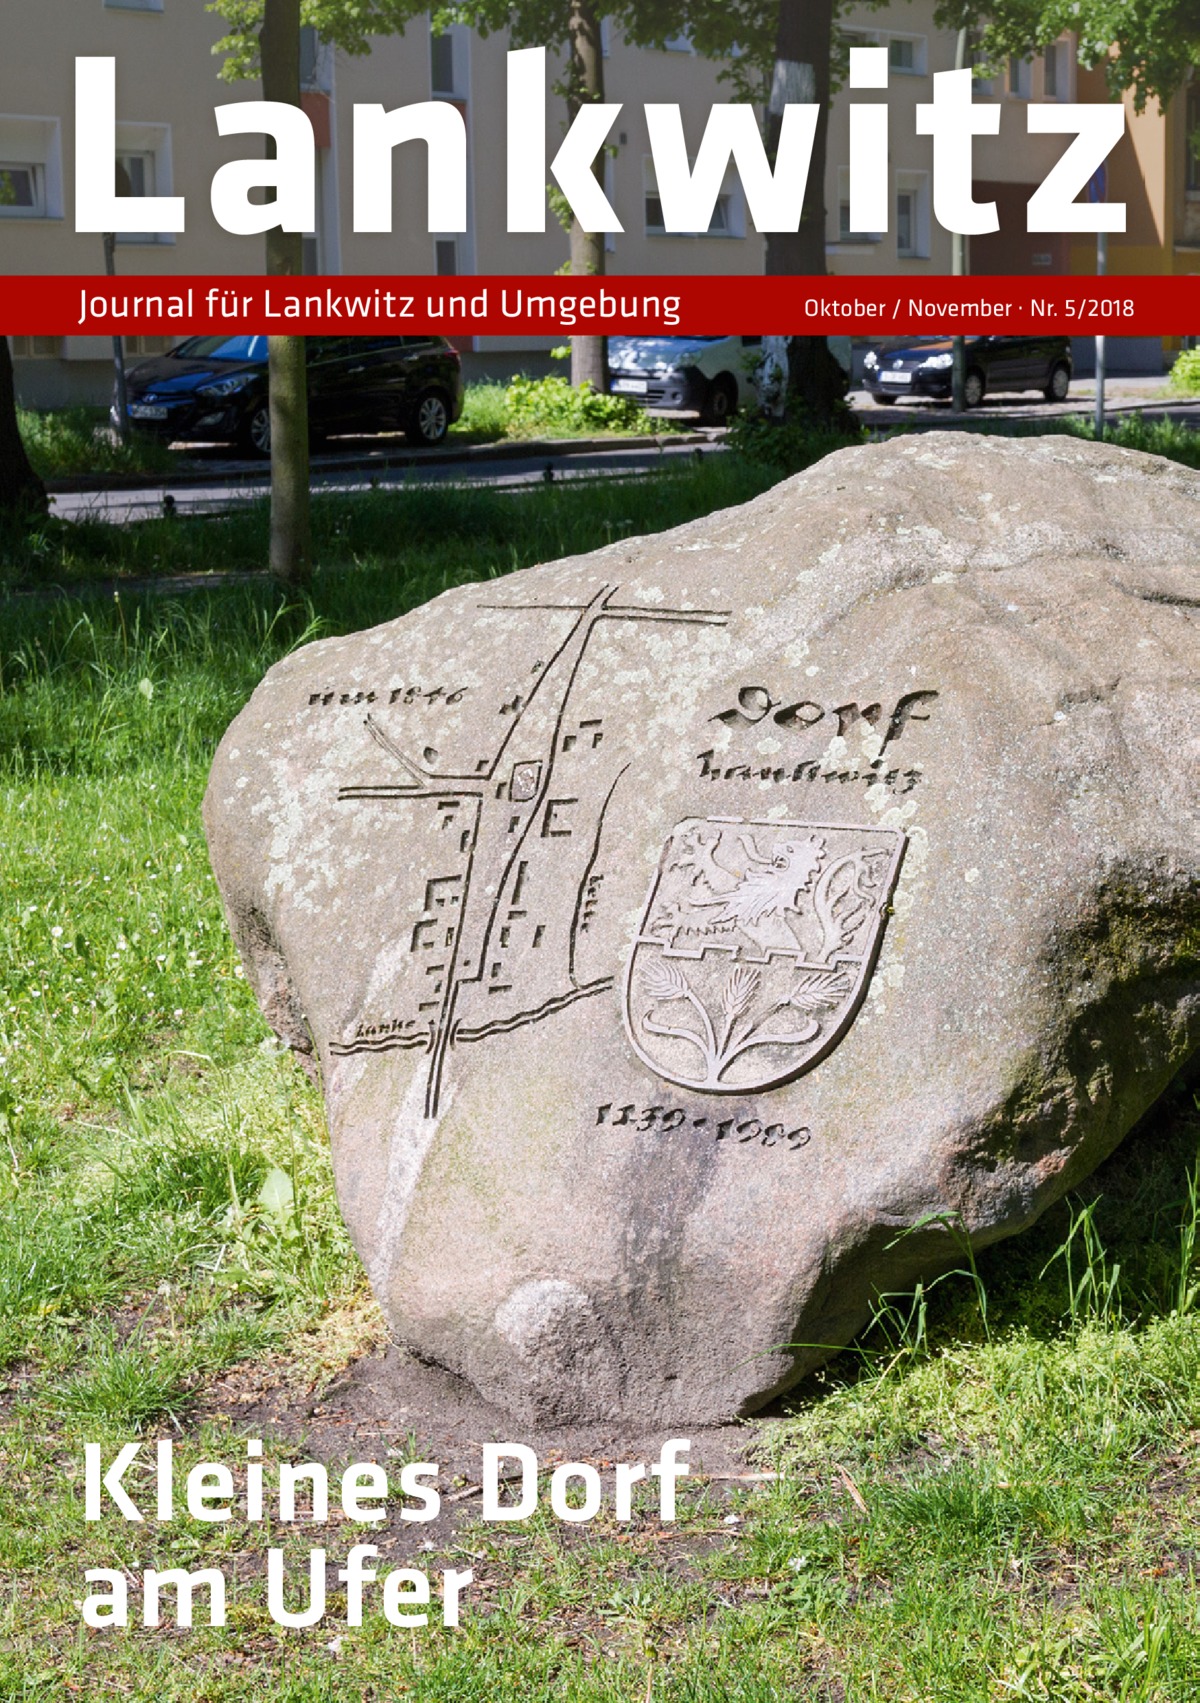 Lankwitz Journal für Lankwitz und Umgebung  Kleines Dorf am Ufer  Oktober / November · Nr. 5/2018